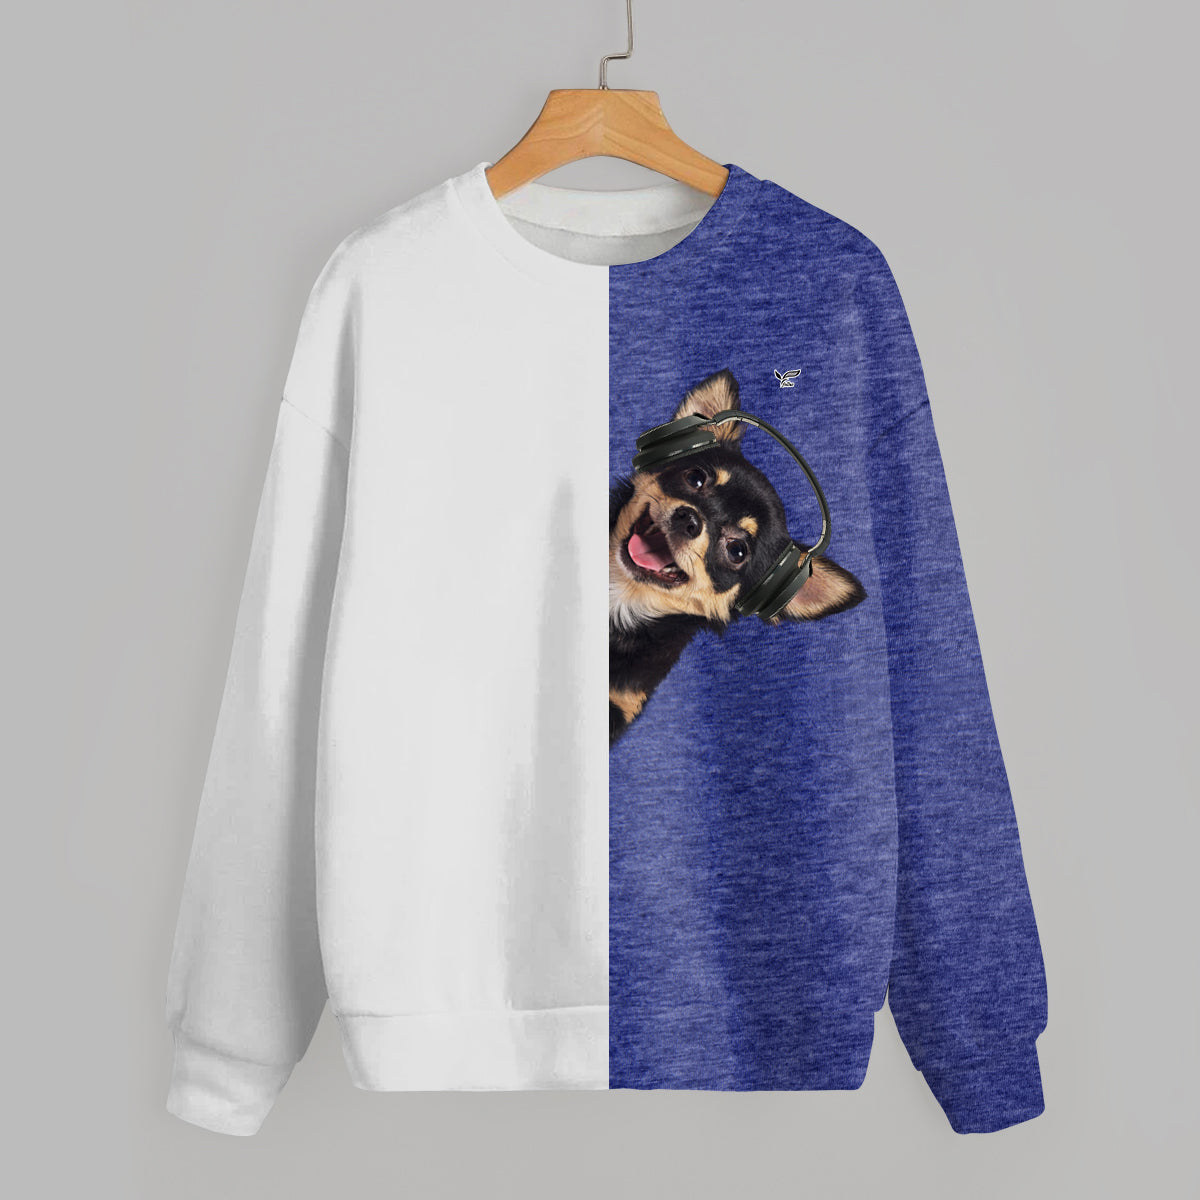 Lustige glückliche Zeit - Chihuahua-Sweatshirt V6